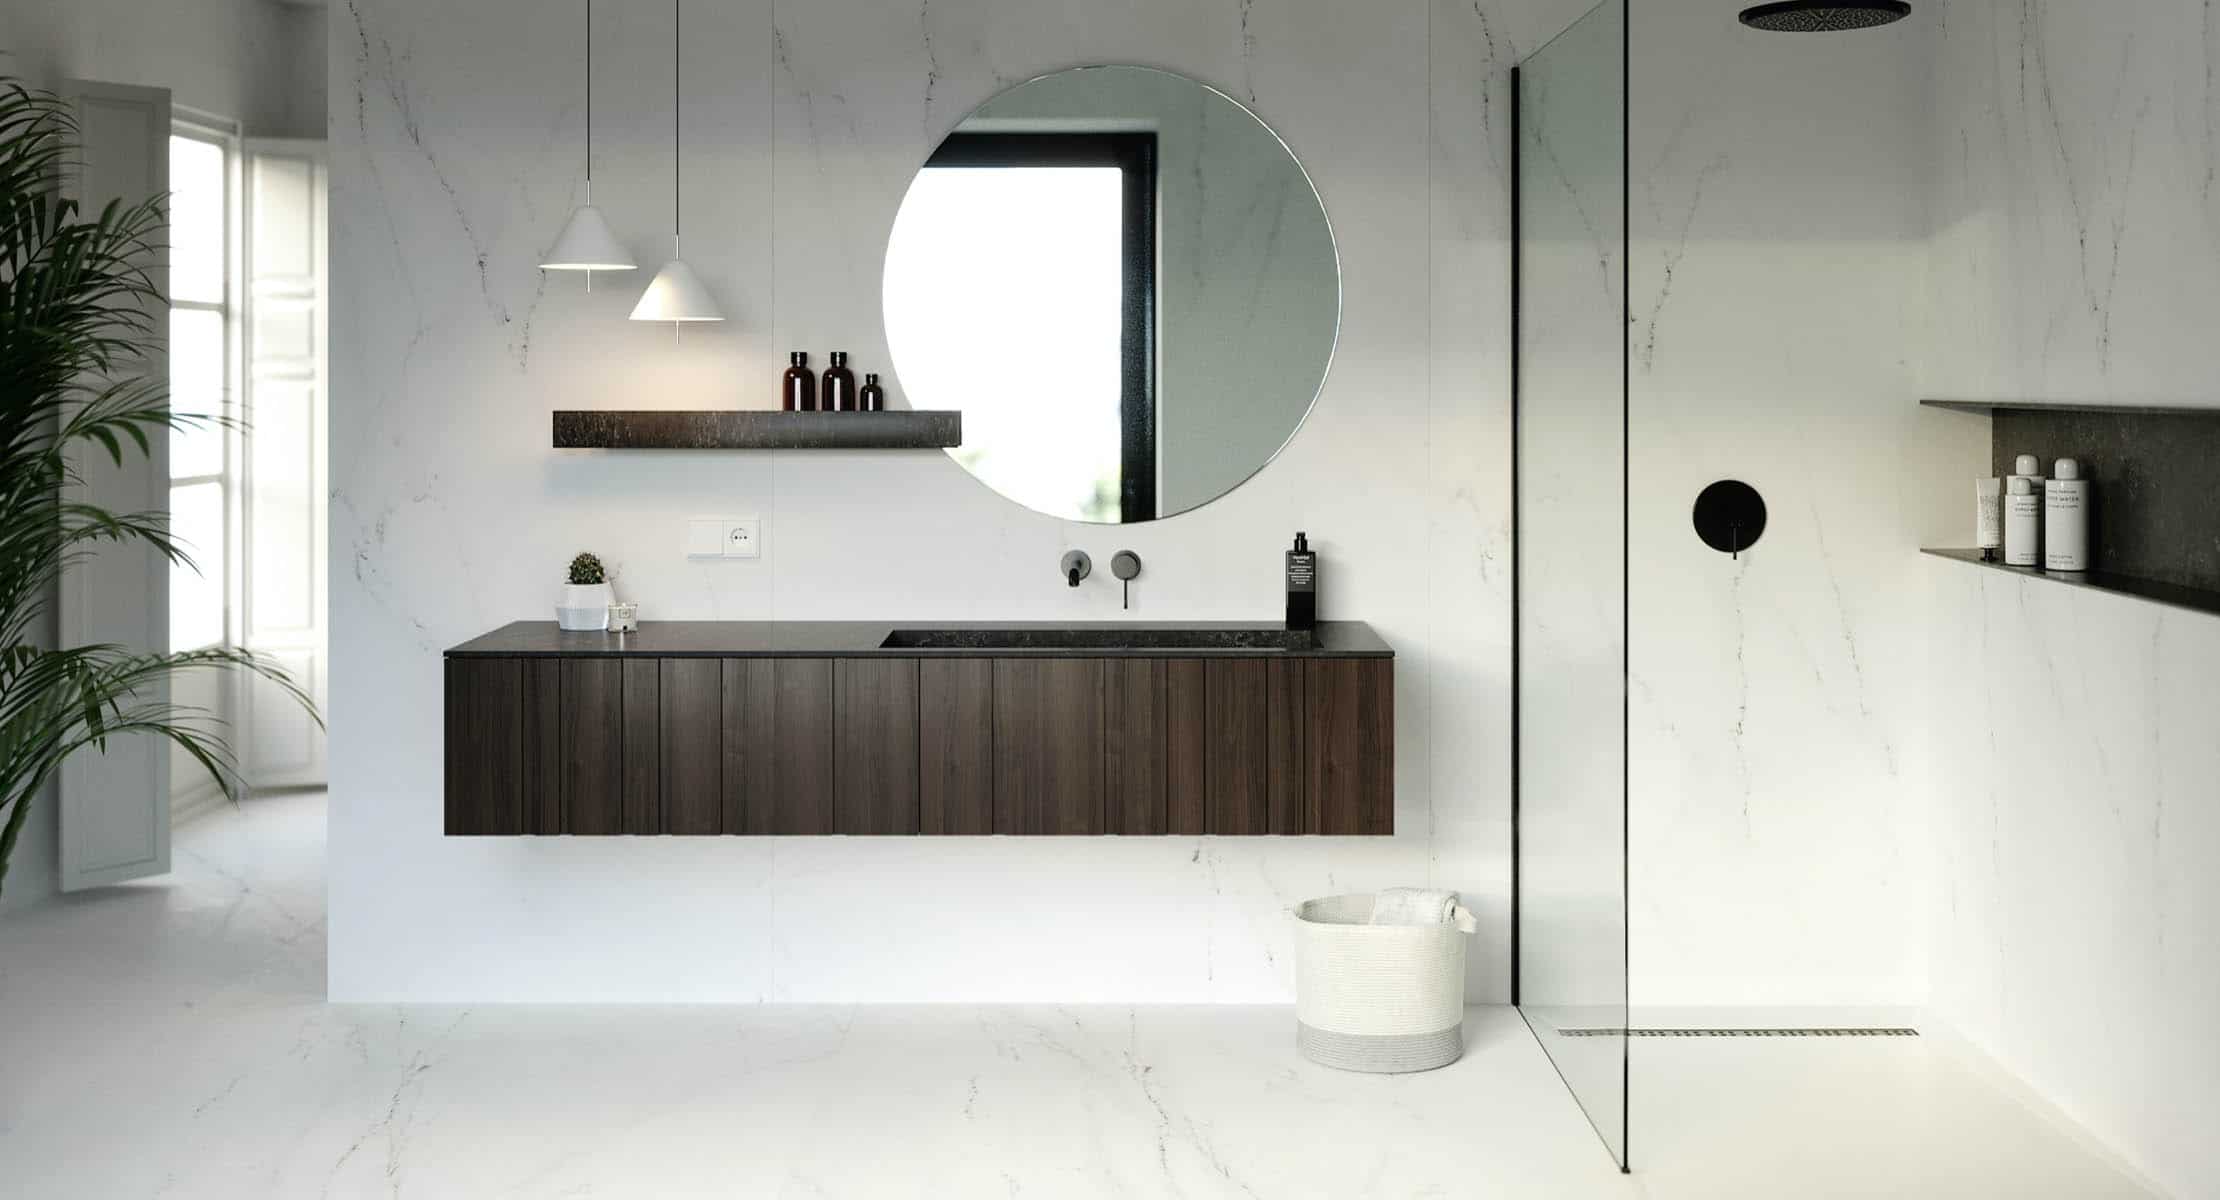 Image of baños 01 header in essential-pure-bathroom - Cosentino